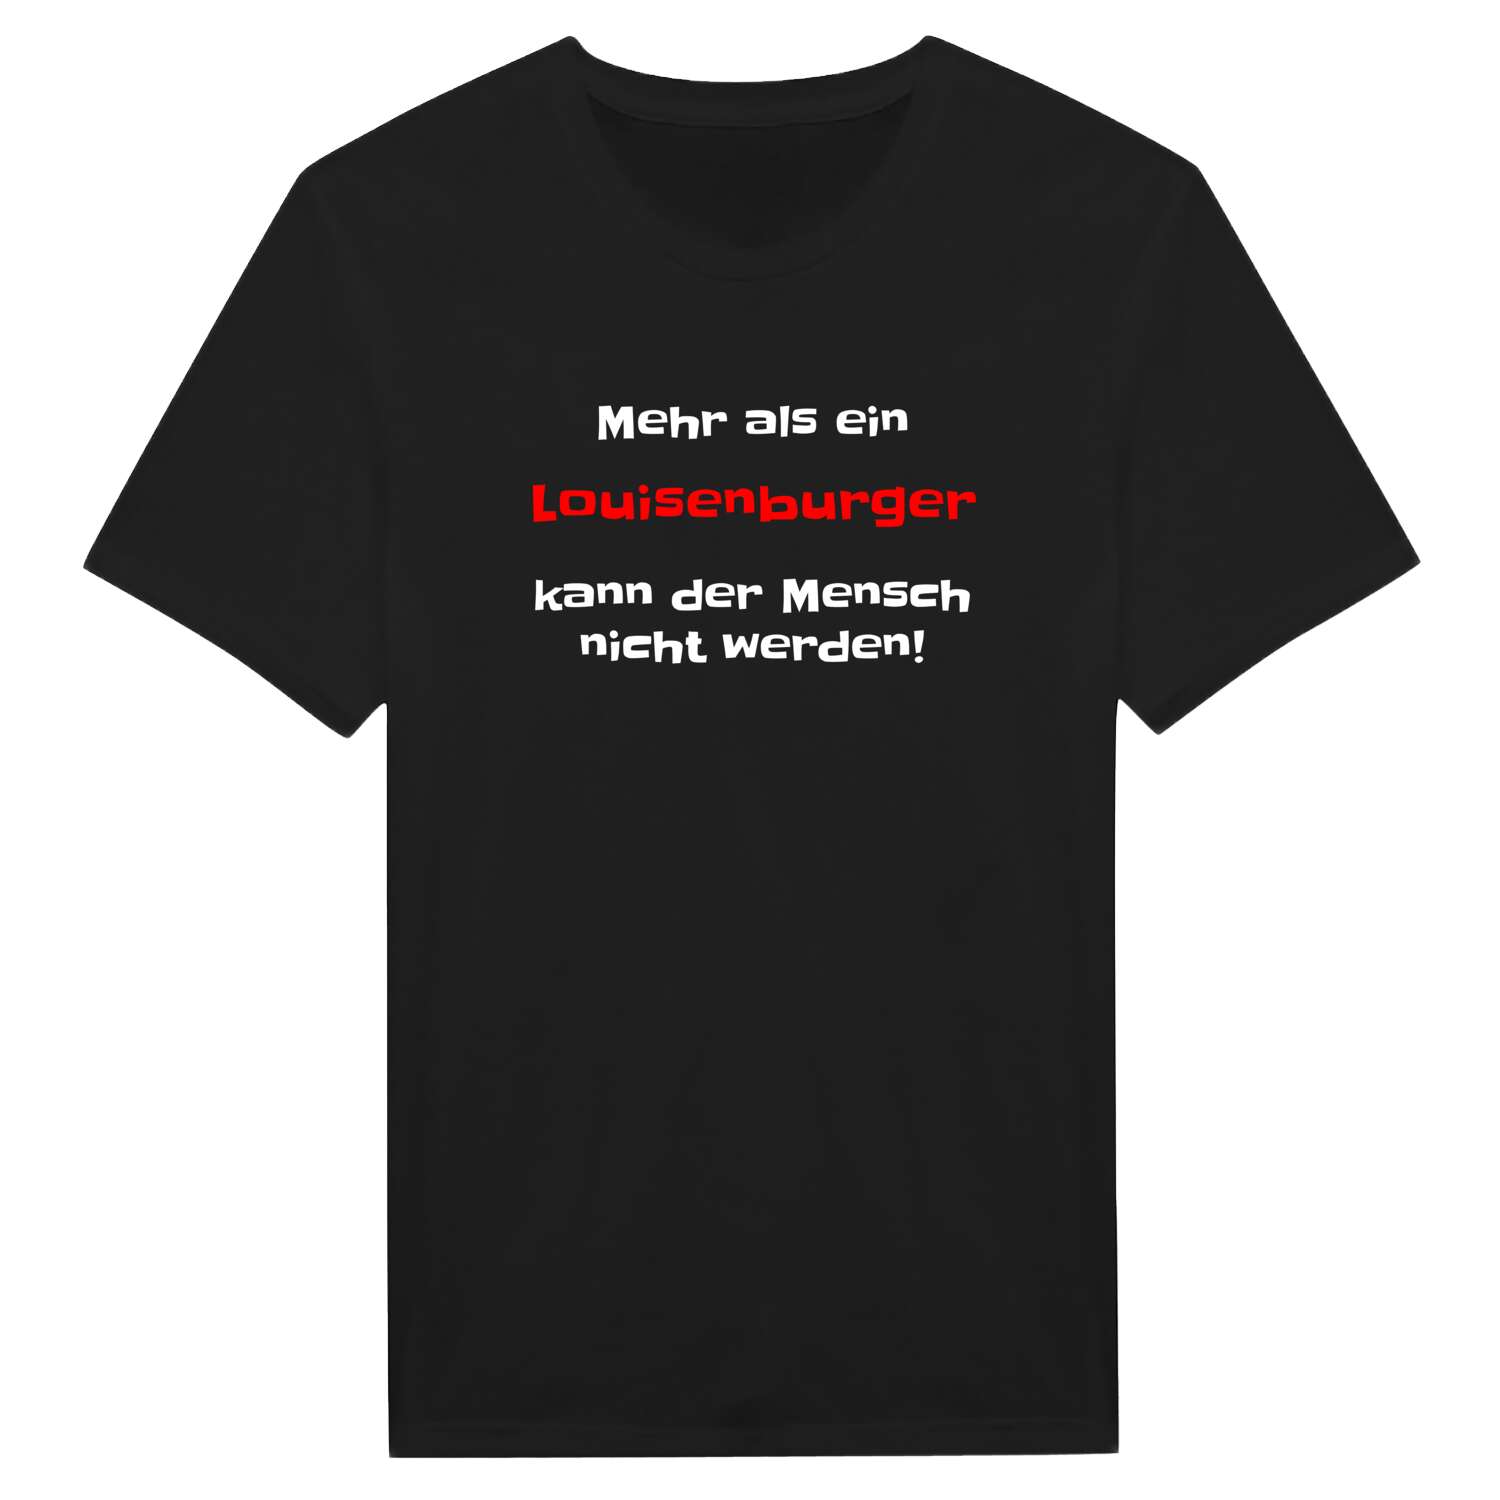 Louisenburg T-Shirt »Mehr als ein«